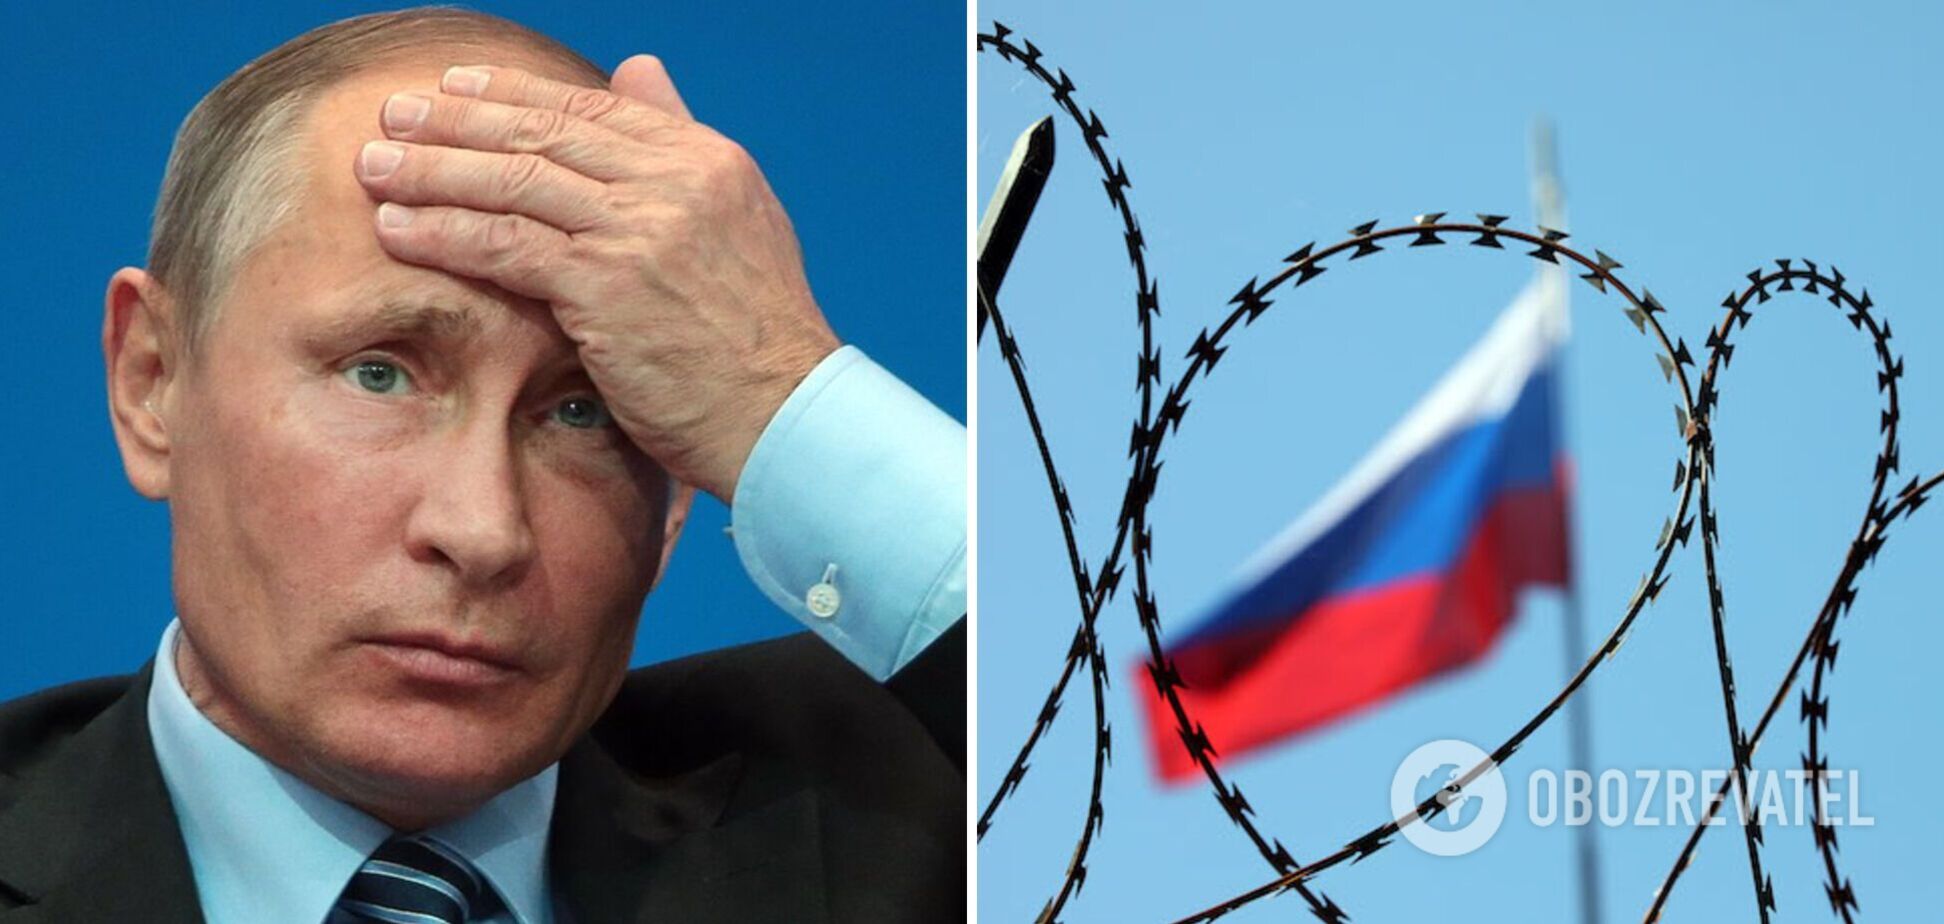 Путін в бункері фактично заарештований: все більше підтверджень